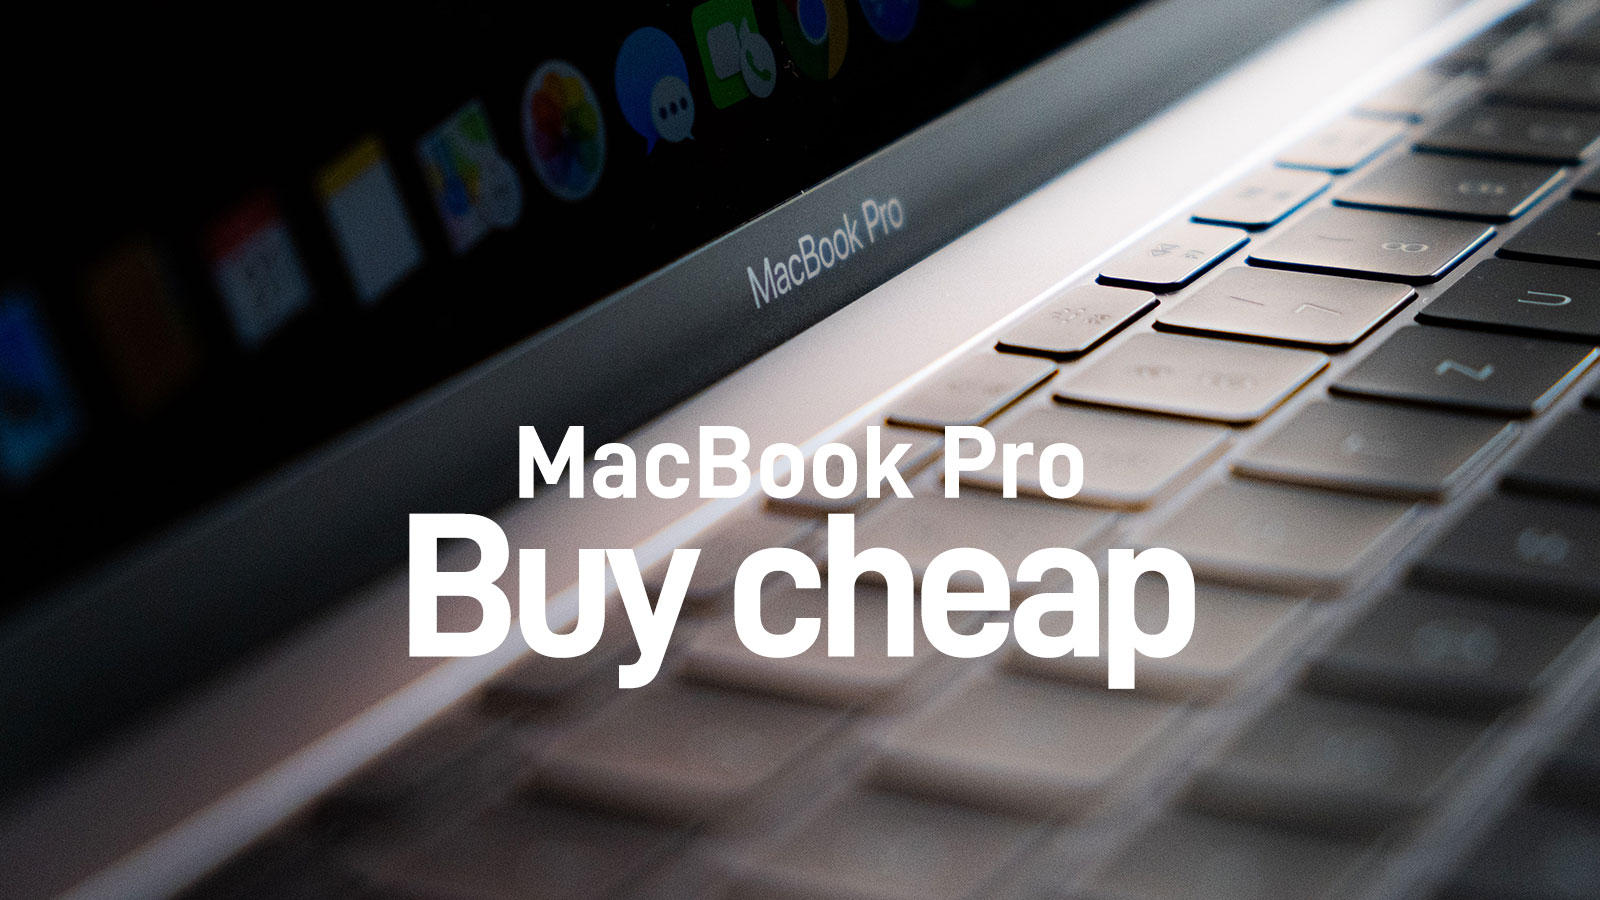 いま、MacBook Proをいちばんお安くお得に買う方法。結論が出ました 